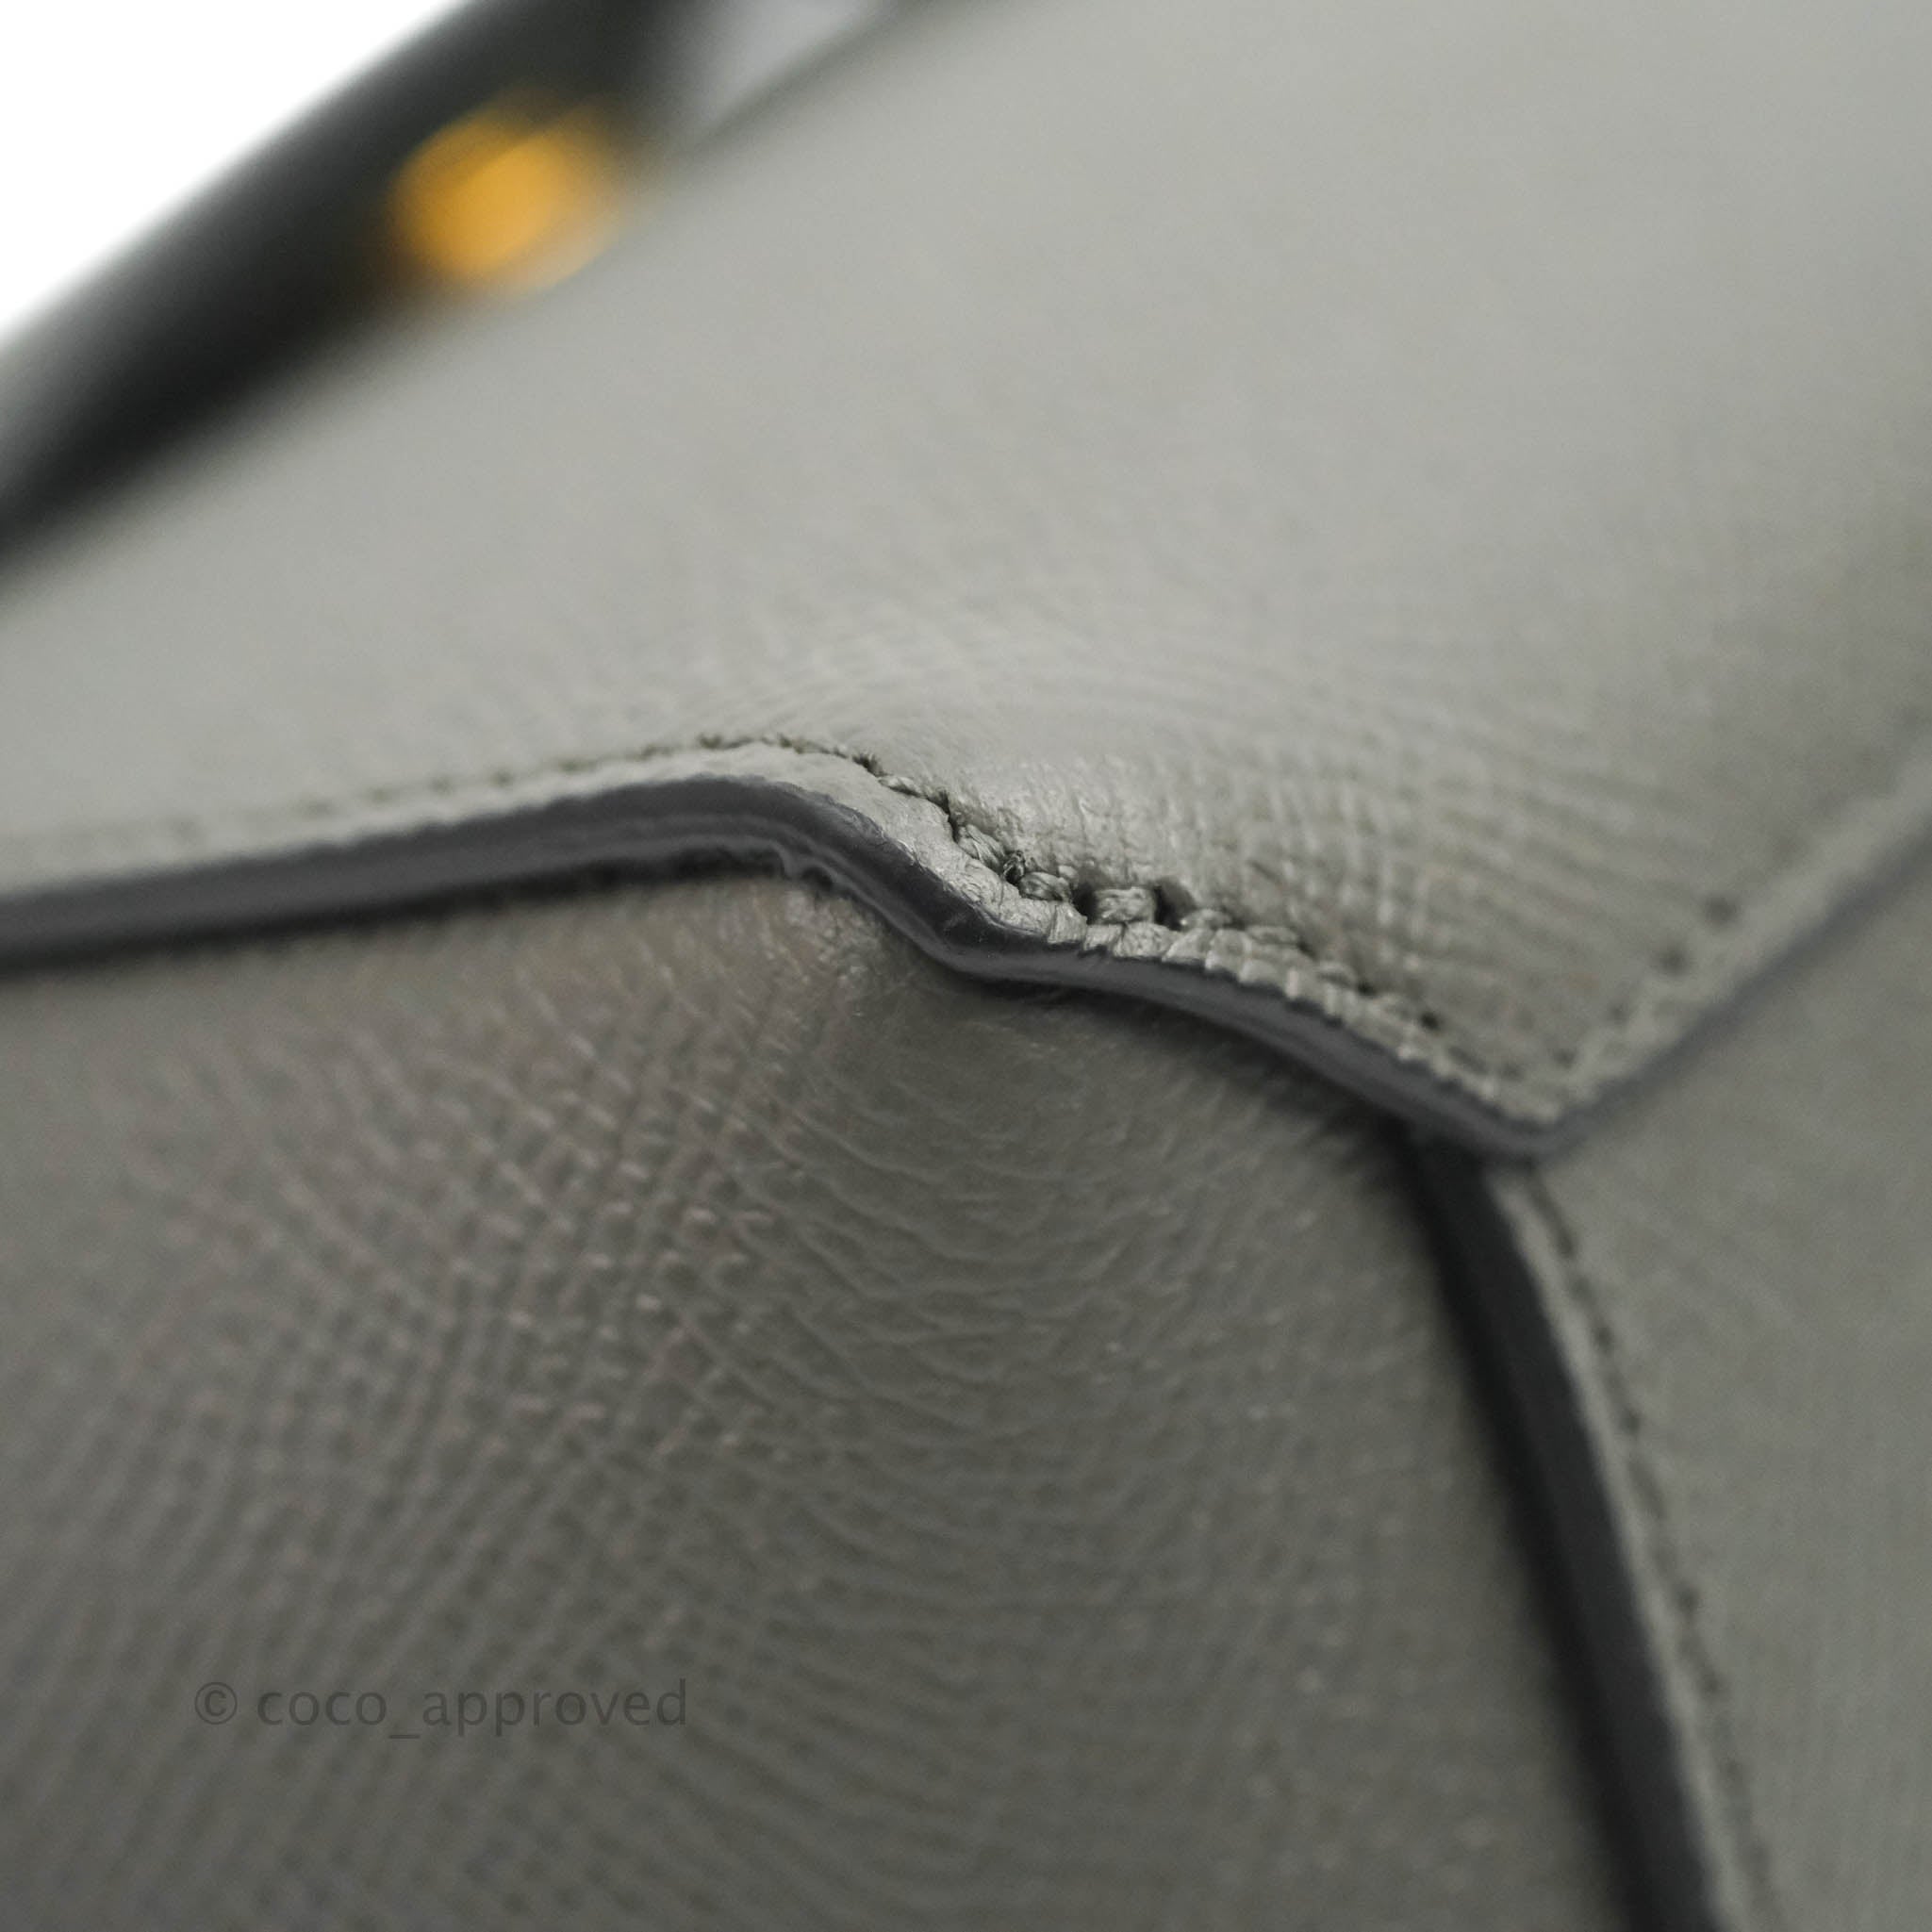 CELINE-Leather-Pico-Belt-Bag-2Way-Shoulder-Bag-Gray-194263 – dct-ep_vintage  luxury Store